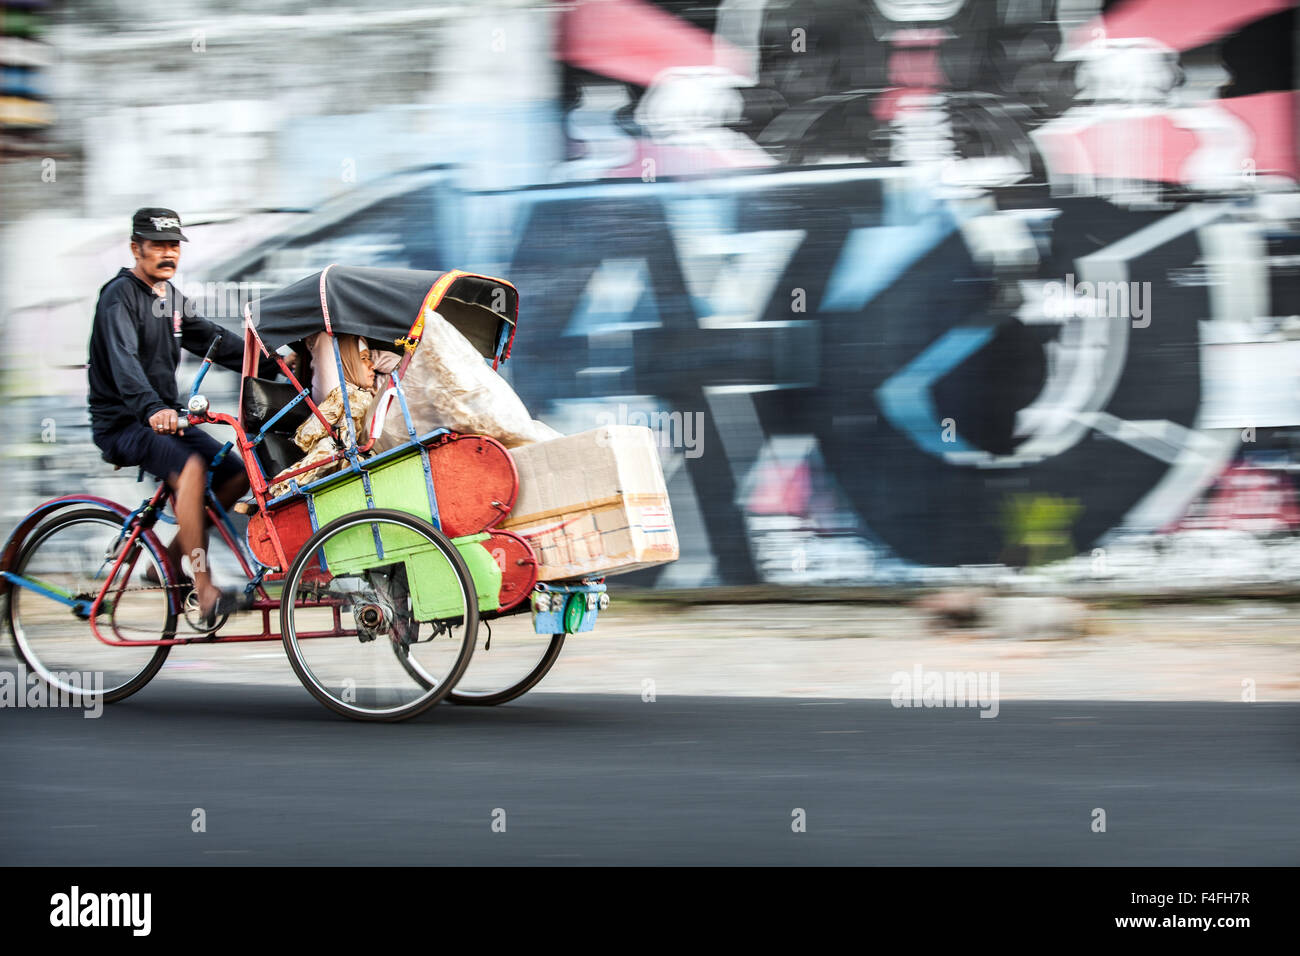 Cycle rickshaw mit Passagier entlang Beschleunigung in diesem Panorama Fotografie street scene der indonesischen Stadt leben mit bunten Graffiti Wand Hintergrund Stockfoto